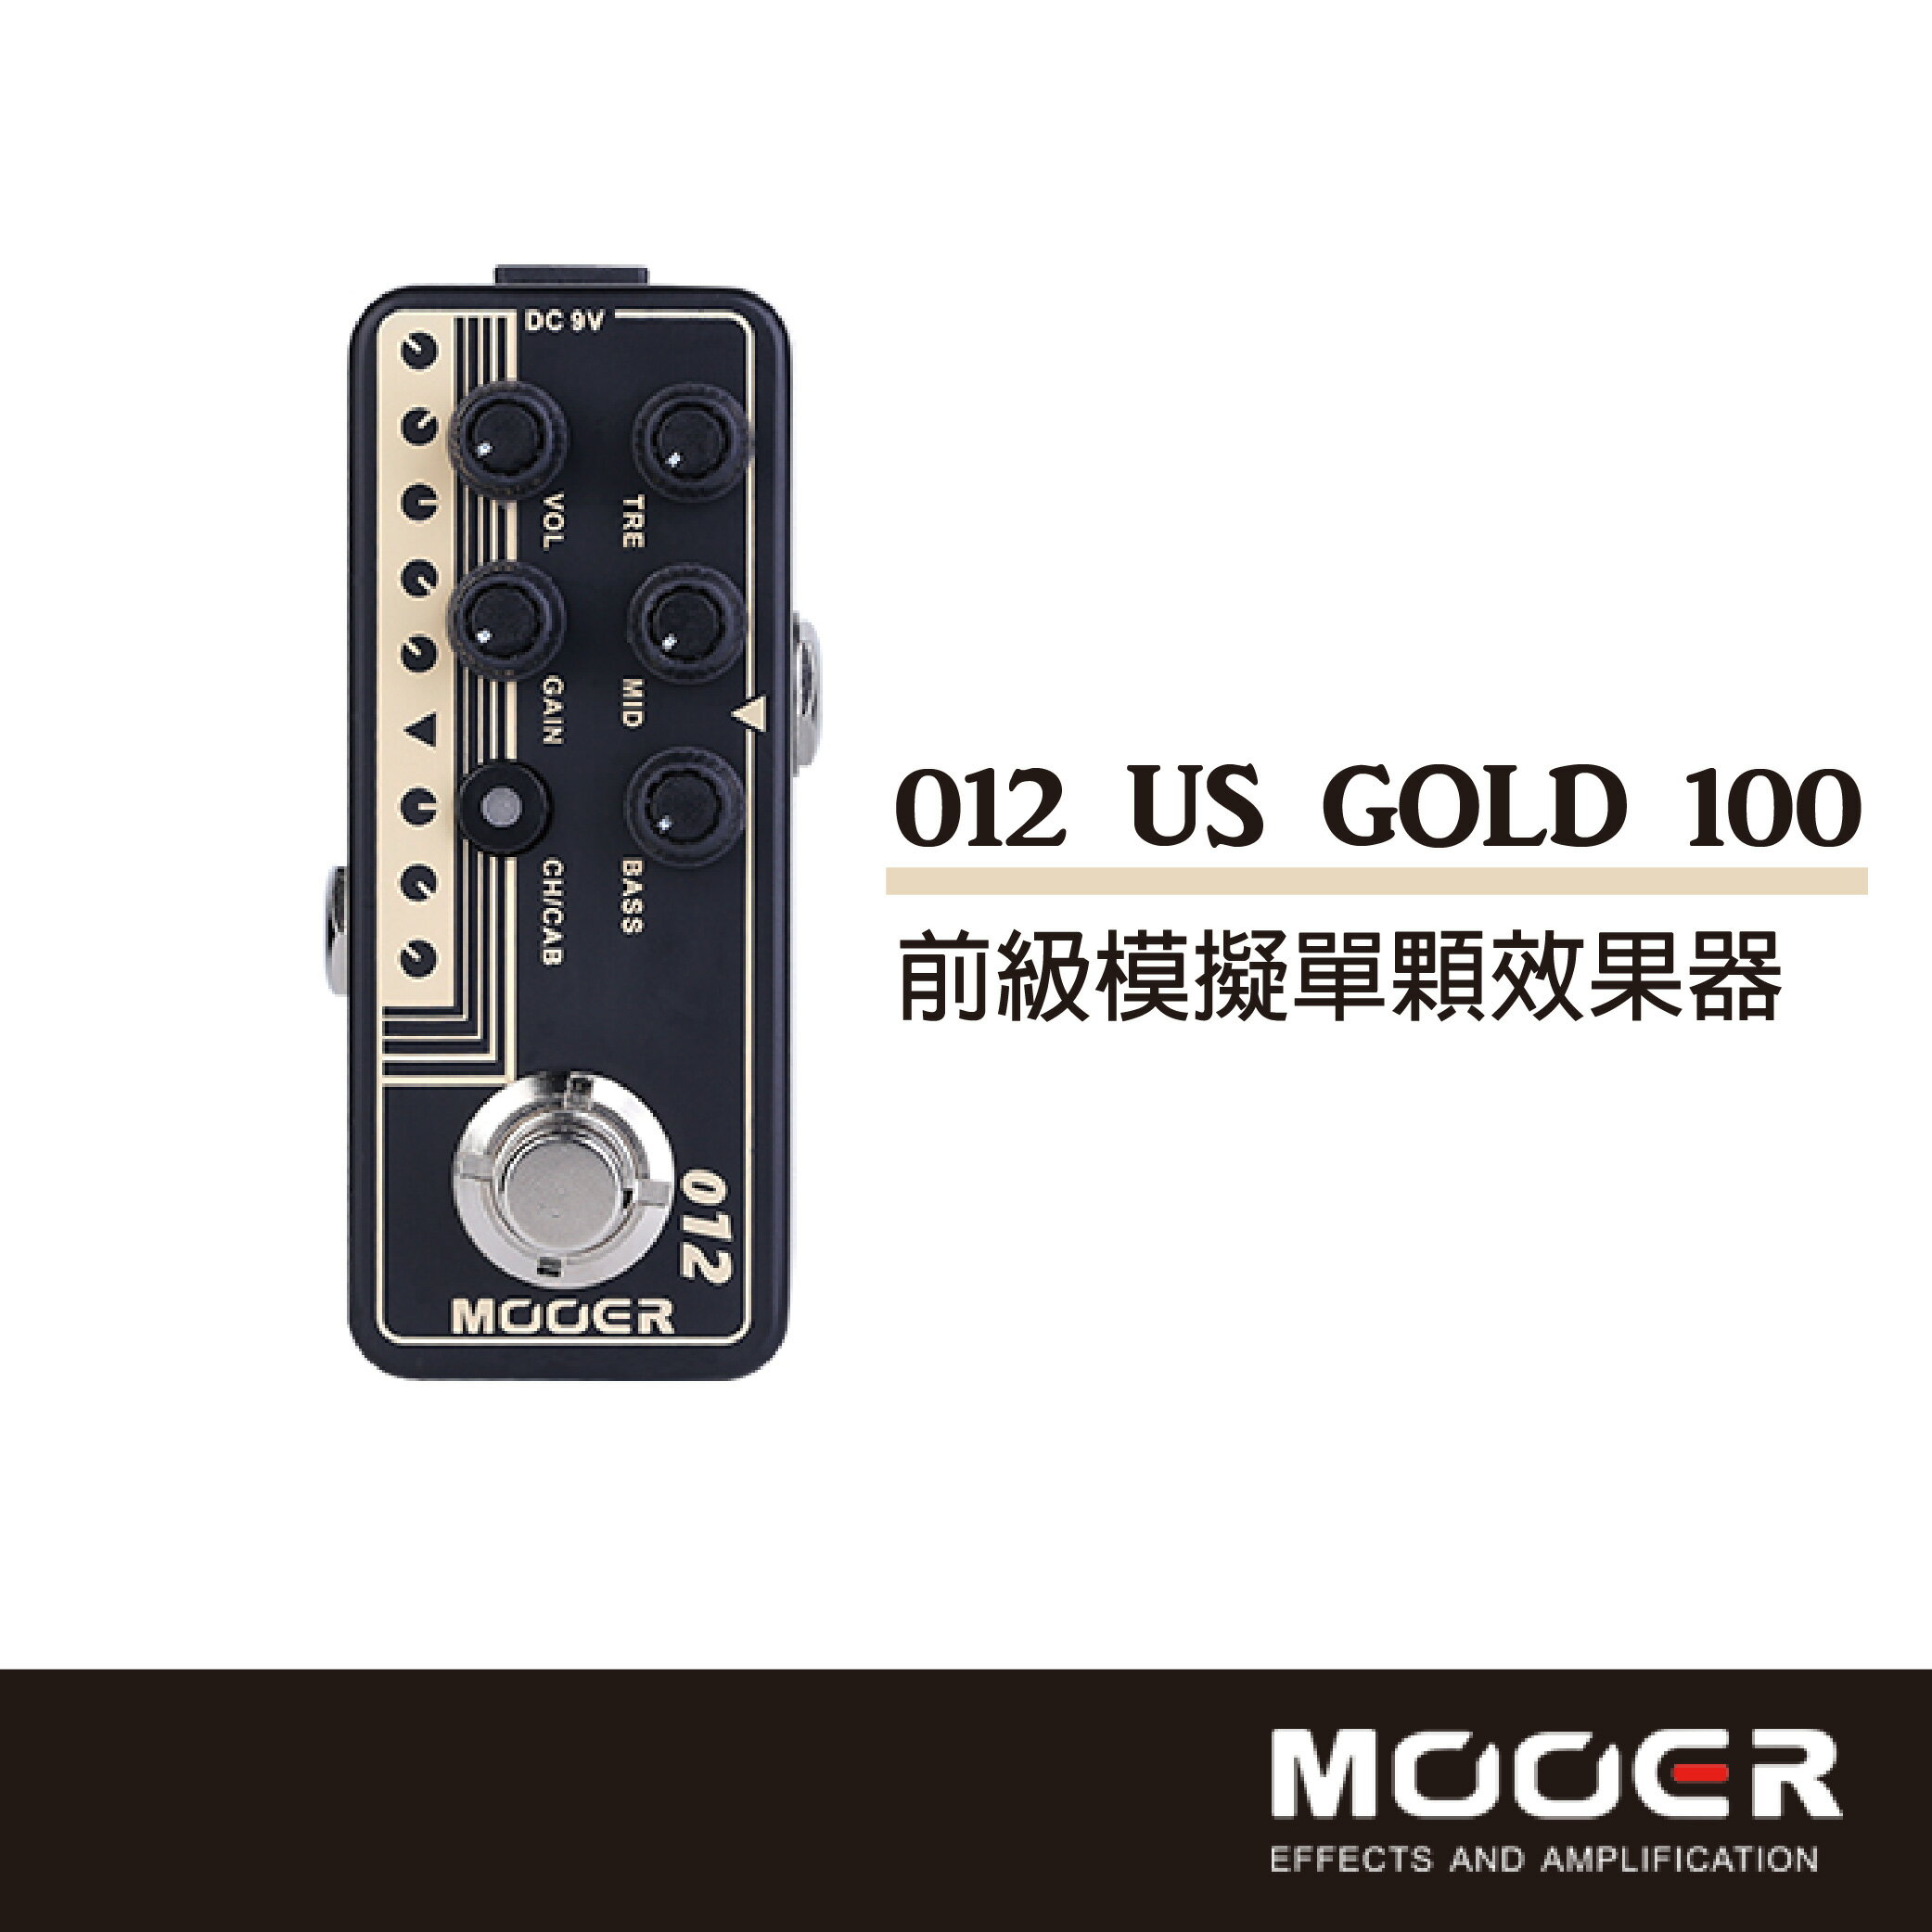 【非凡樂器】MOOER US GOLD 100前級模擬單顆效果器/贈導線/公司貨